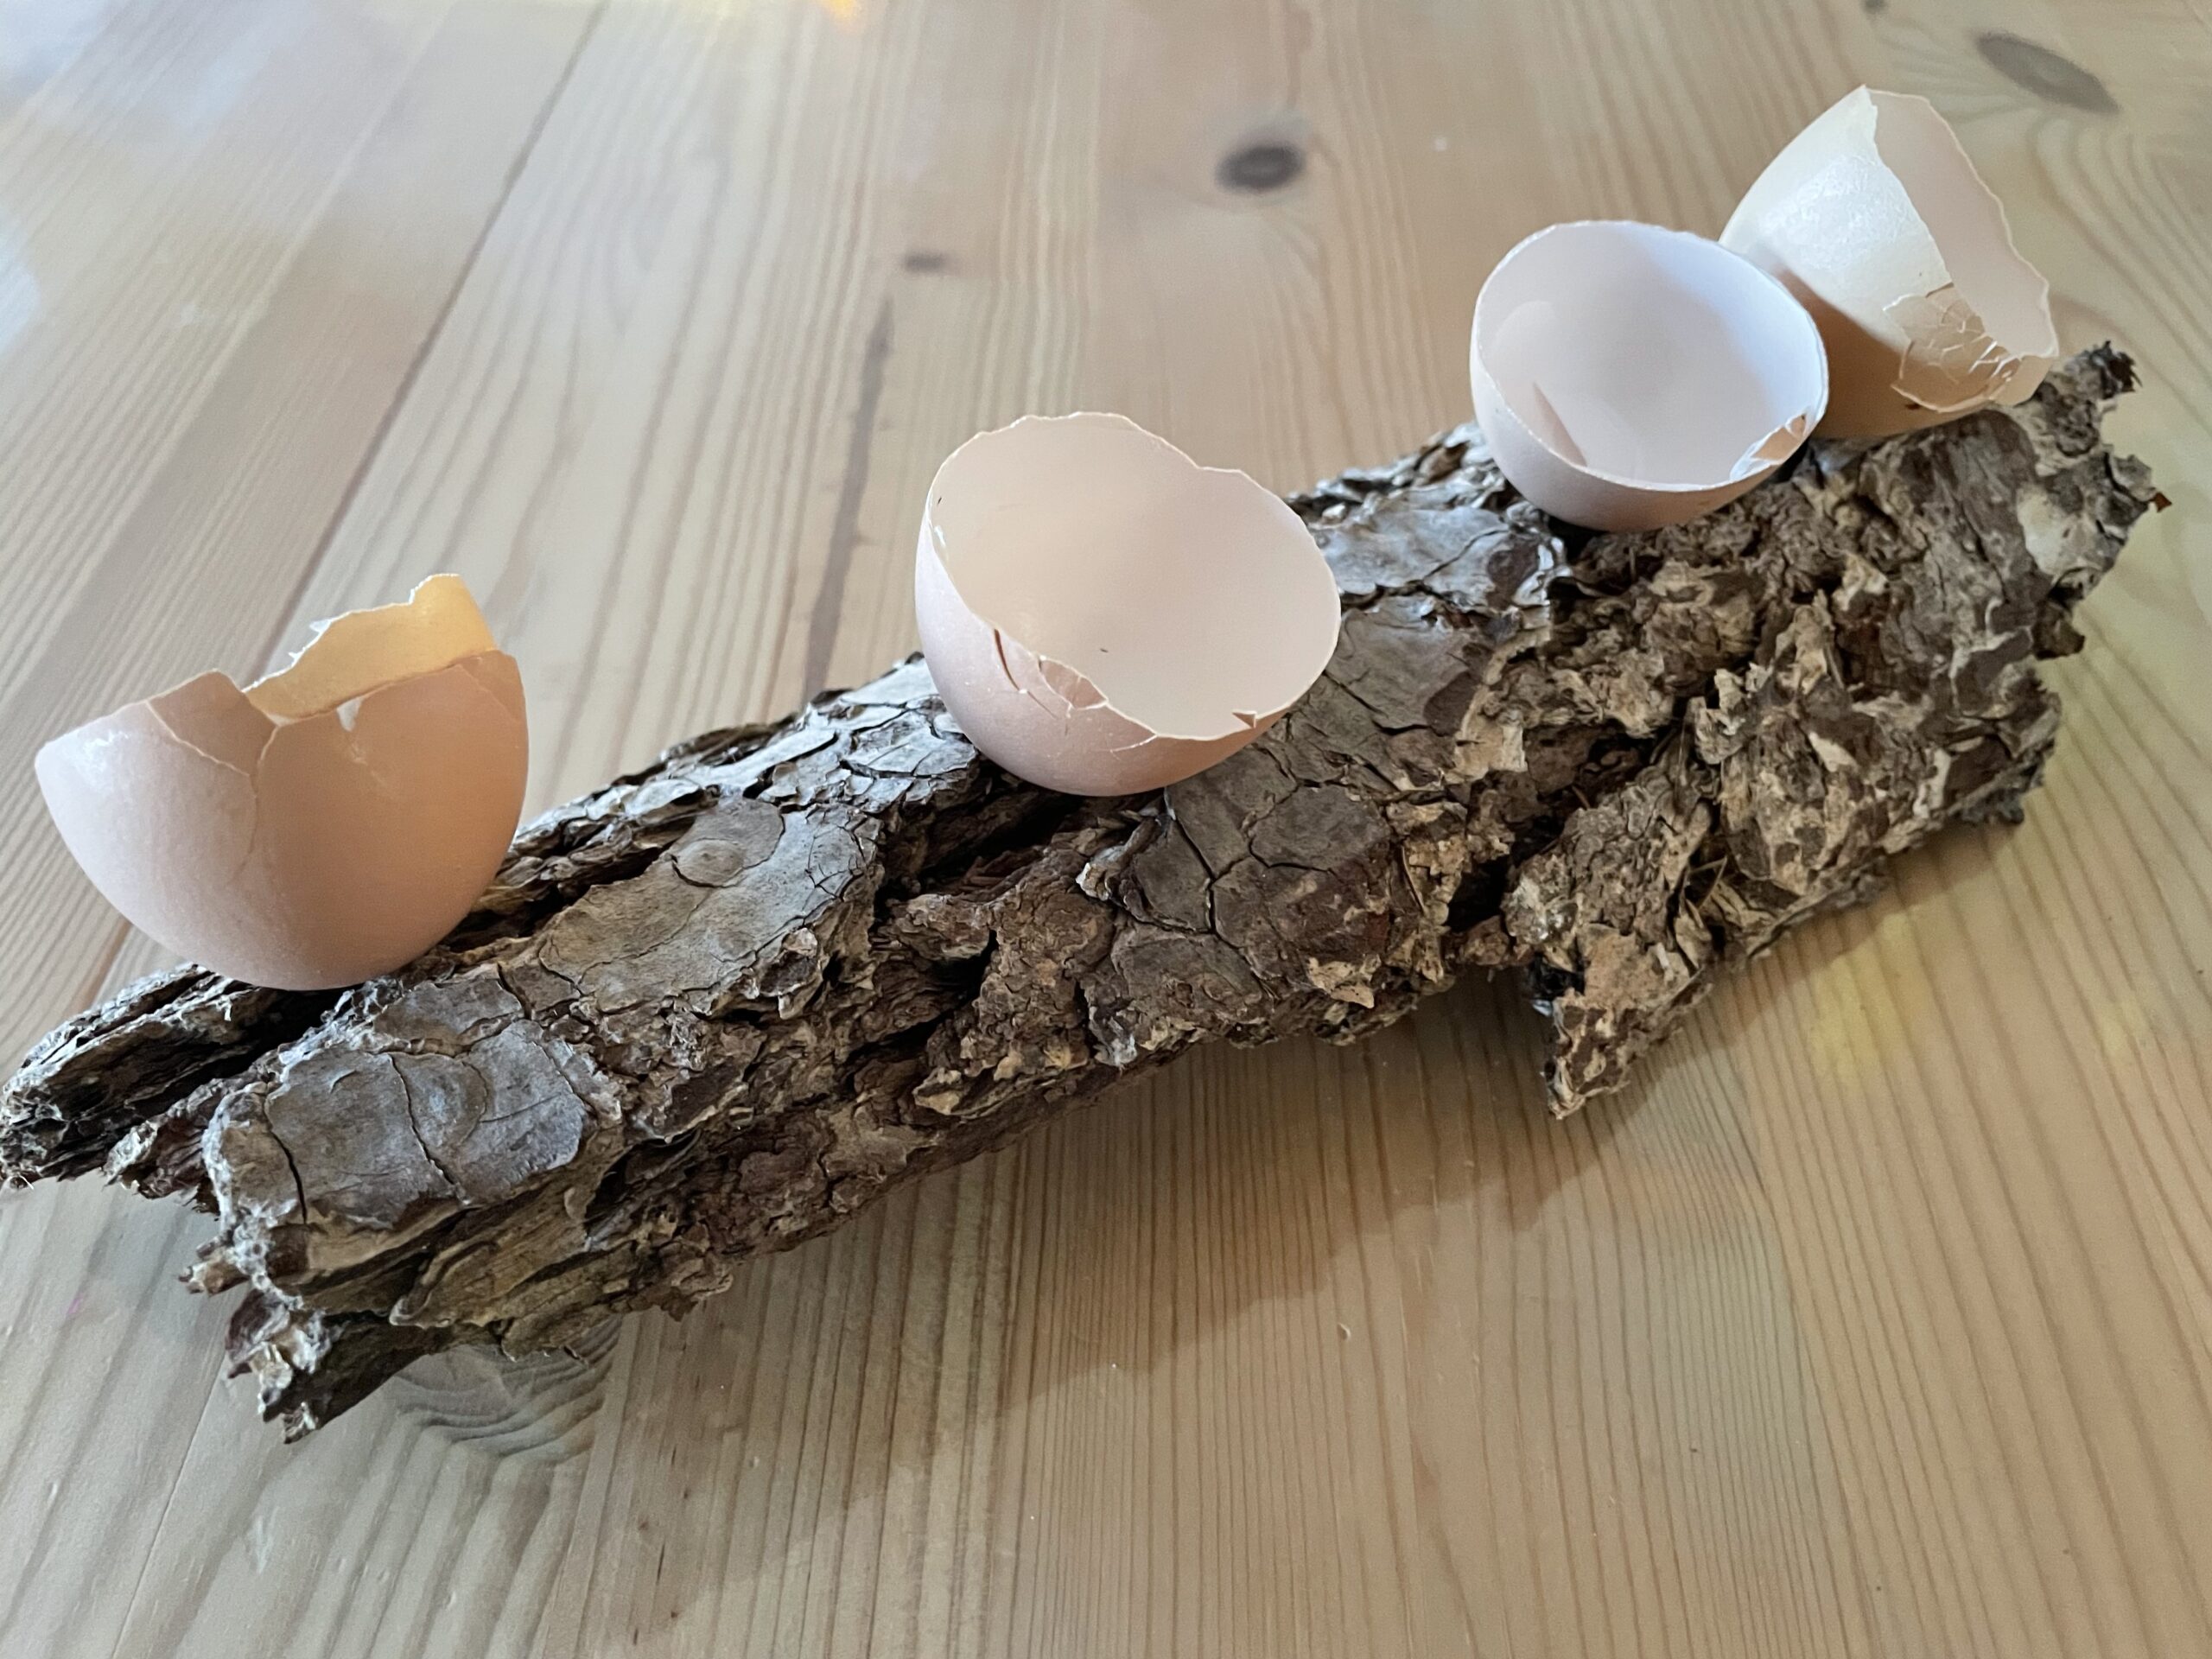 Bild zum Schritt 4 für die Kinder-Beschäftigung: 'Ordnet jetzt die Eierschalen auf der Baumrinde an.'